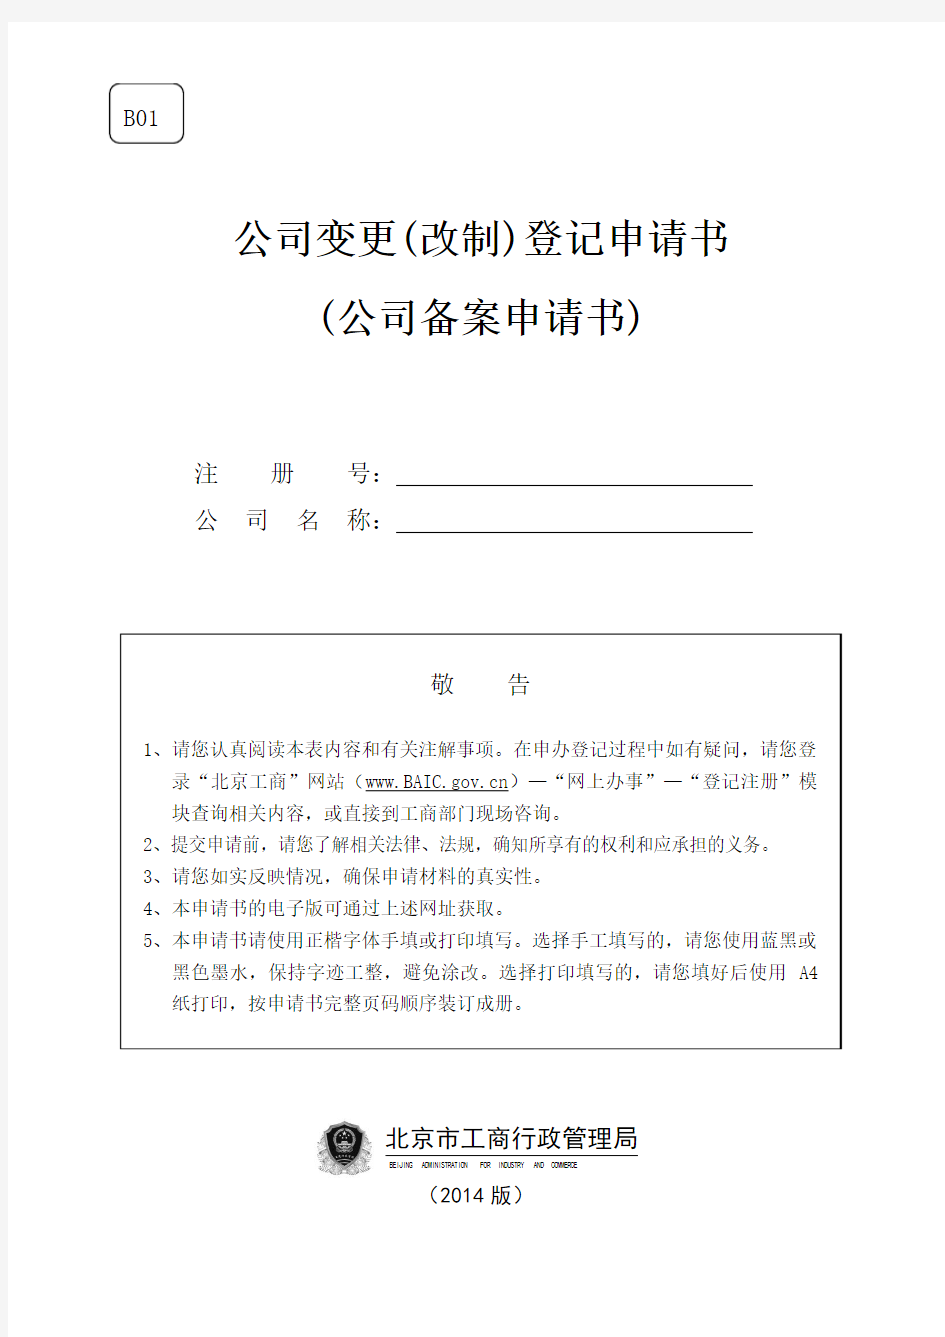 北京公司-B01公司变更(备案)登记申请书